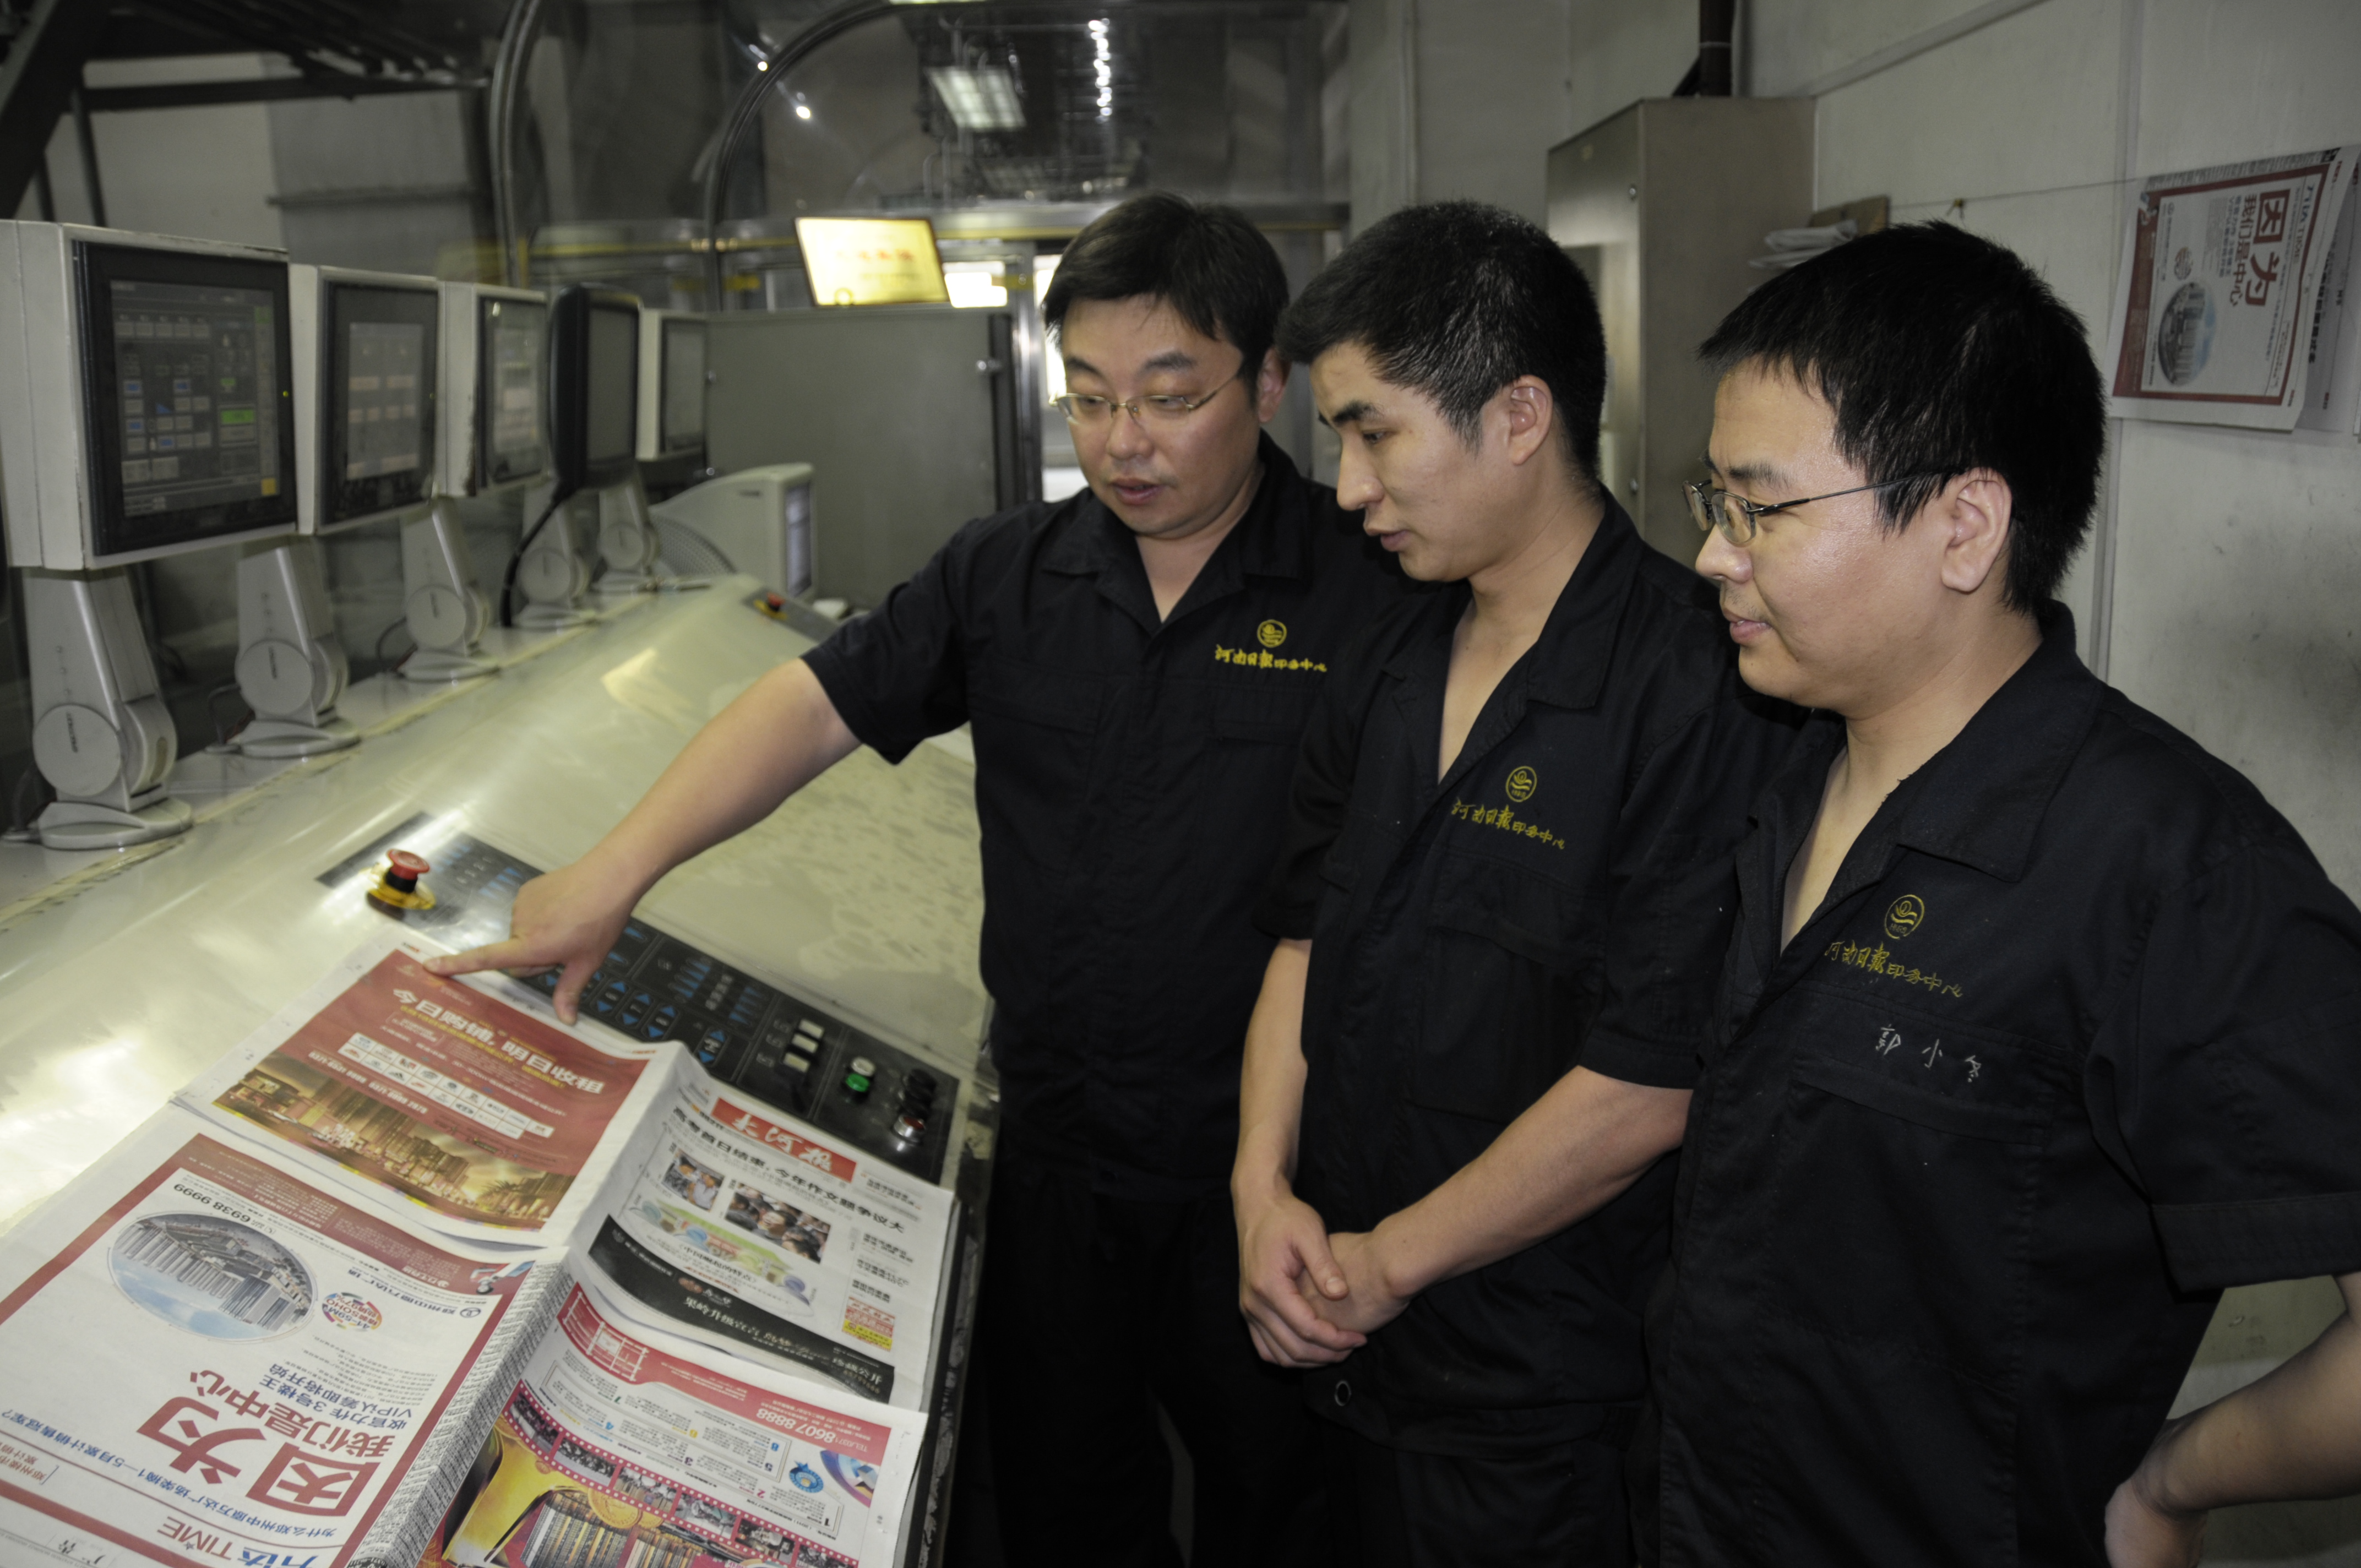 郑州 高校报纸印刷dm单印刷设计-印刷厂家